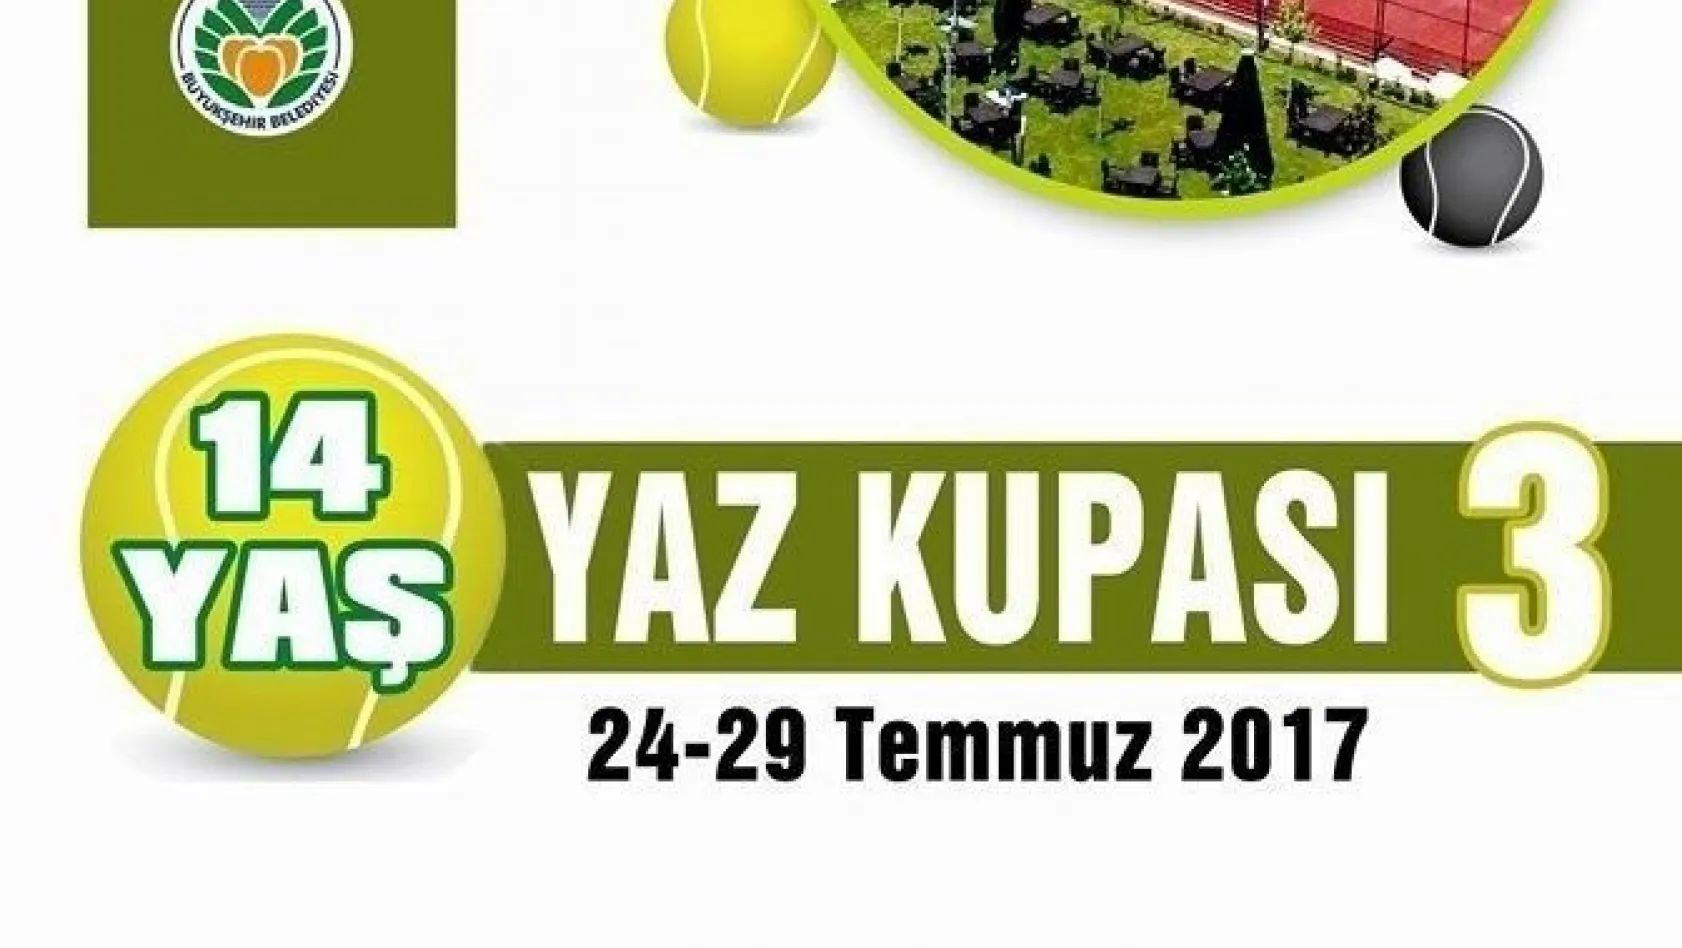 Malatya'da 14 Yaş Yaz Kupası Tenis Turnuvası düzenlenecek
